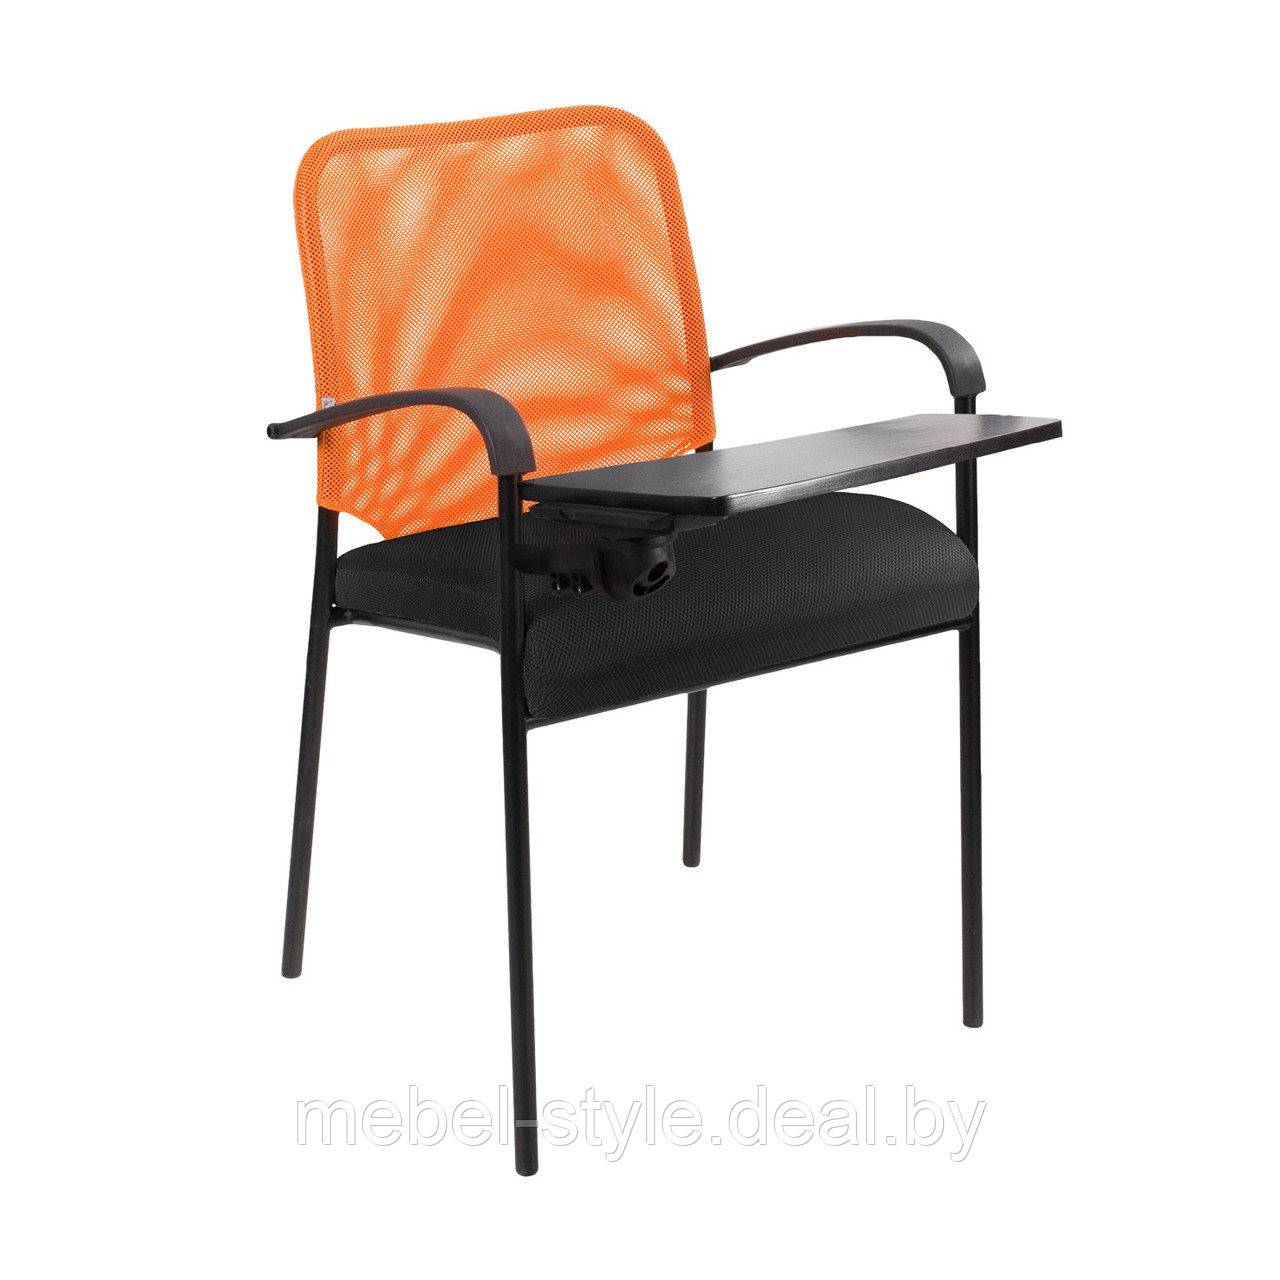 Стул АМИГО блек ARM T для посетителей, офиса и дома, Кресло AMIGO Black  ARM T +пюпитр ткань + сетка